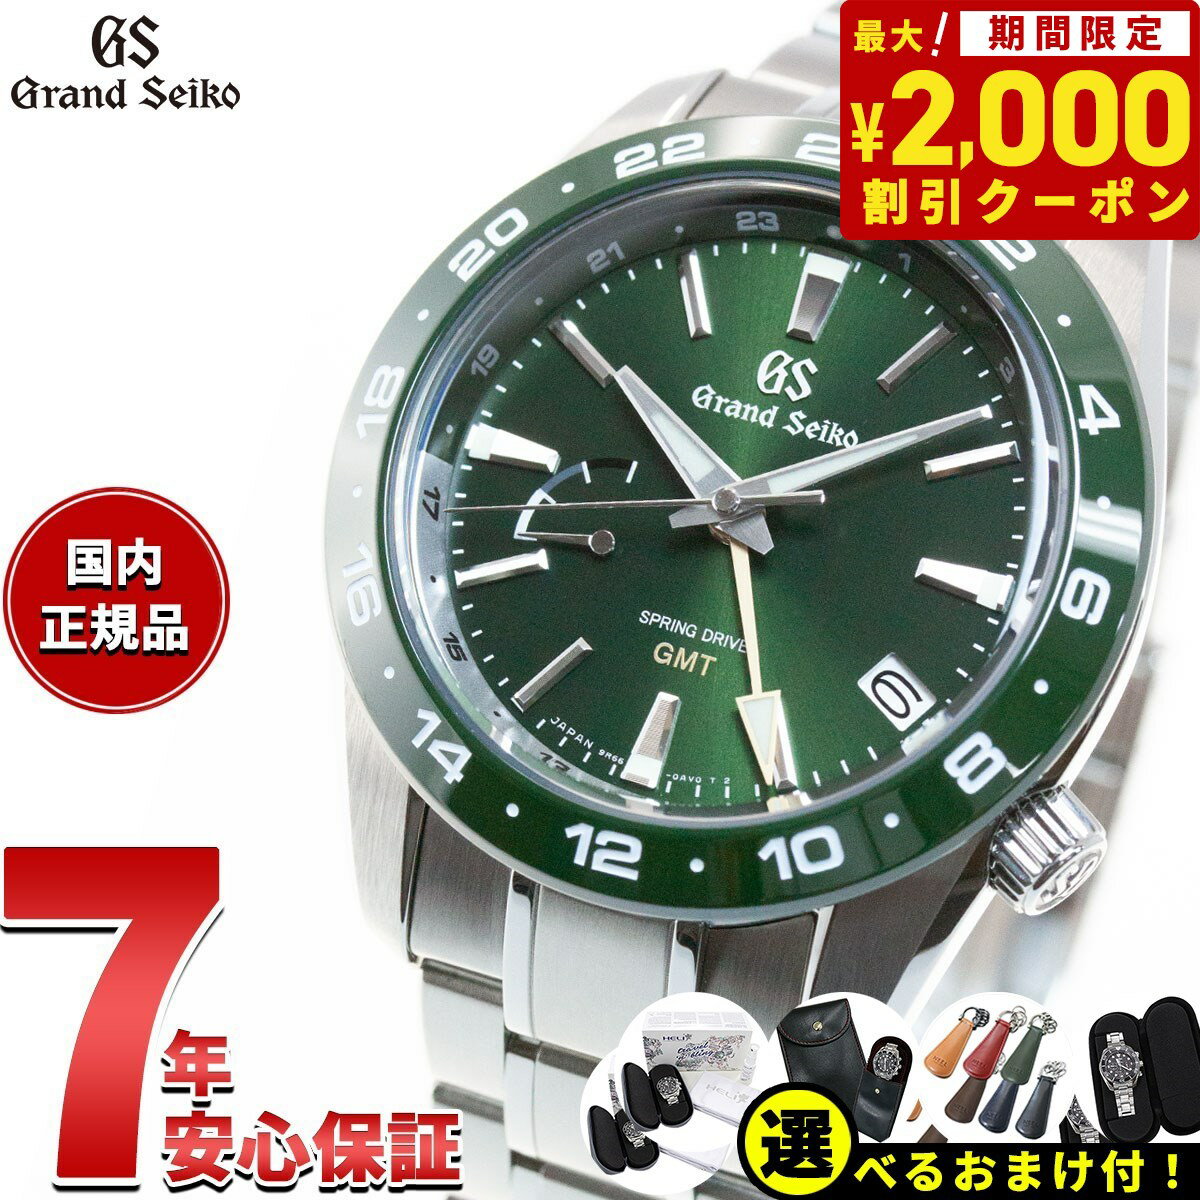 グランドセイコー SBGE257 スプリングドライブ GMT メンズ 腕時計 GRAND SEIKO グリーン